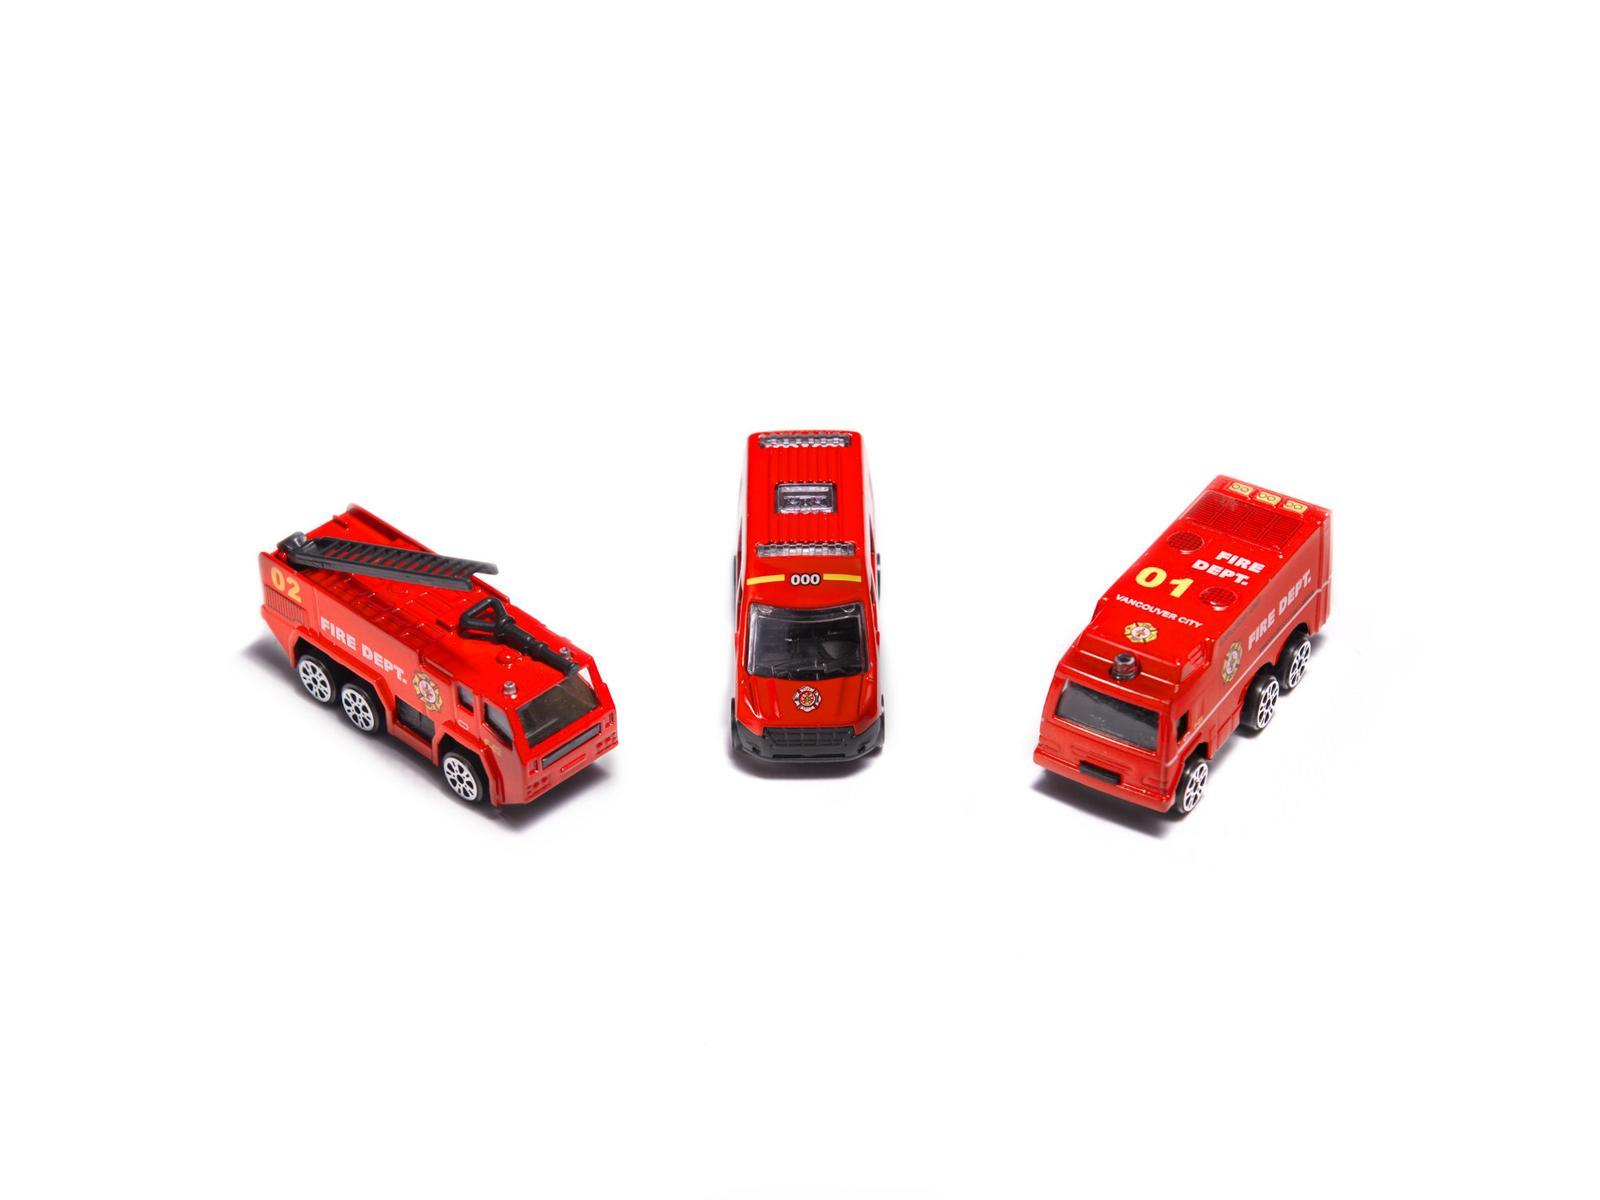 Transporter samolot + 3 pojazdy straż pożarna zabawka dla dzieci czerwona 41,5x31,5x14 cm nr. 5